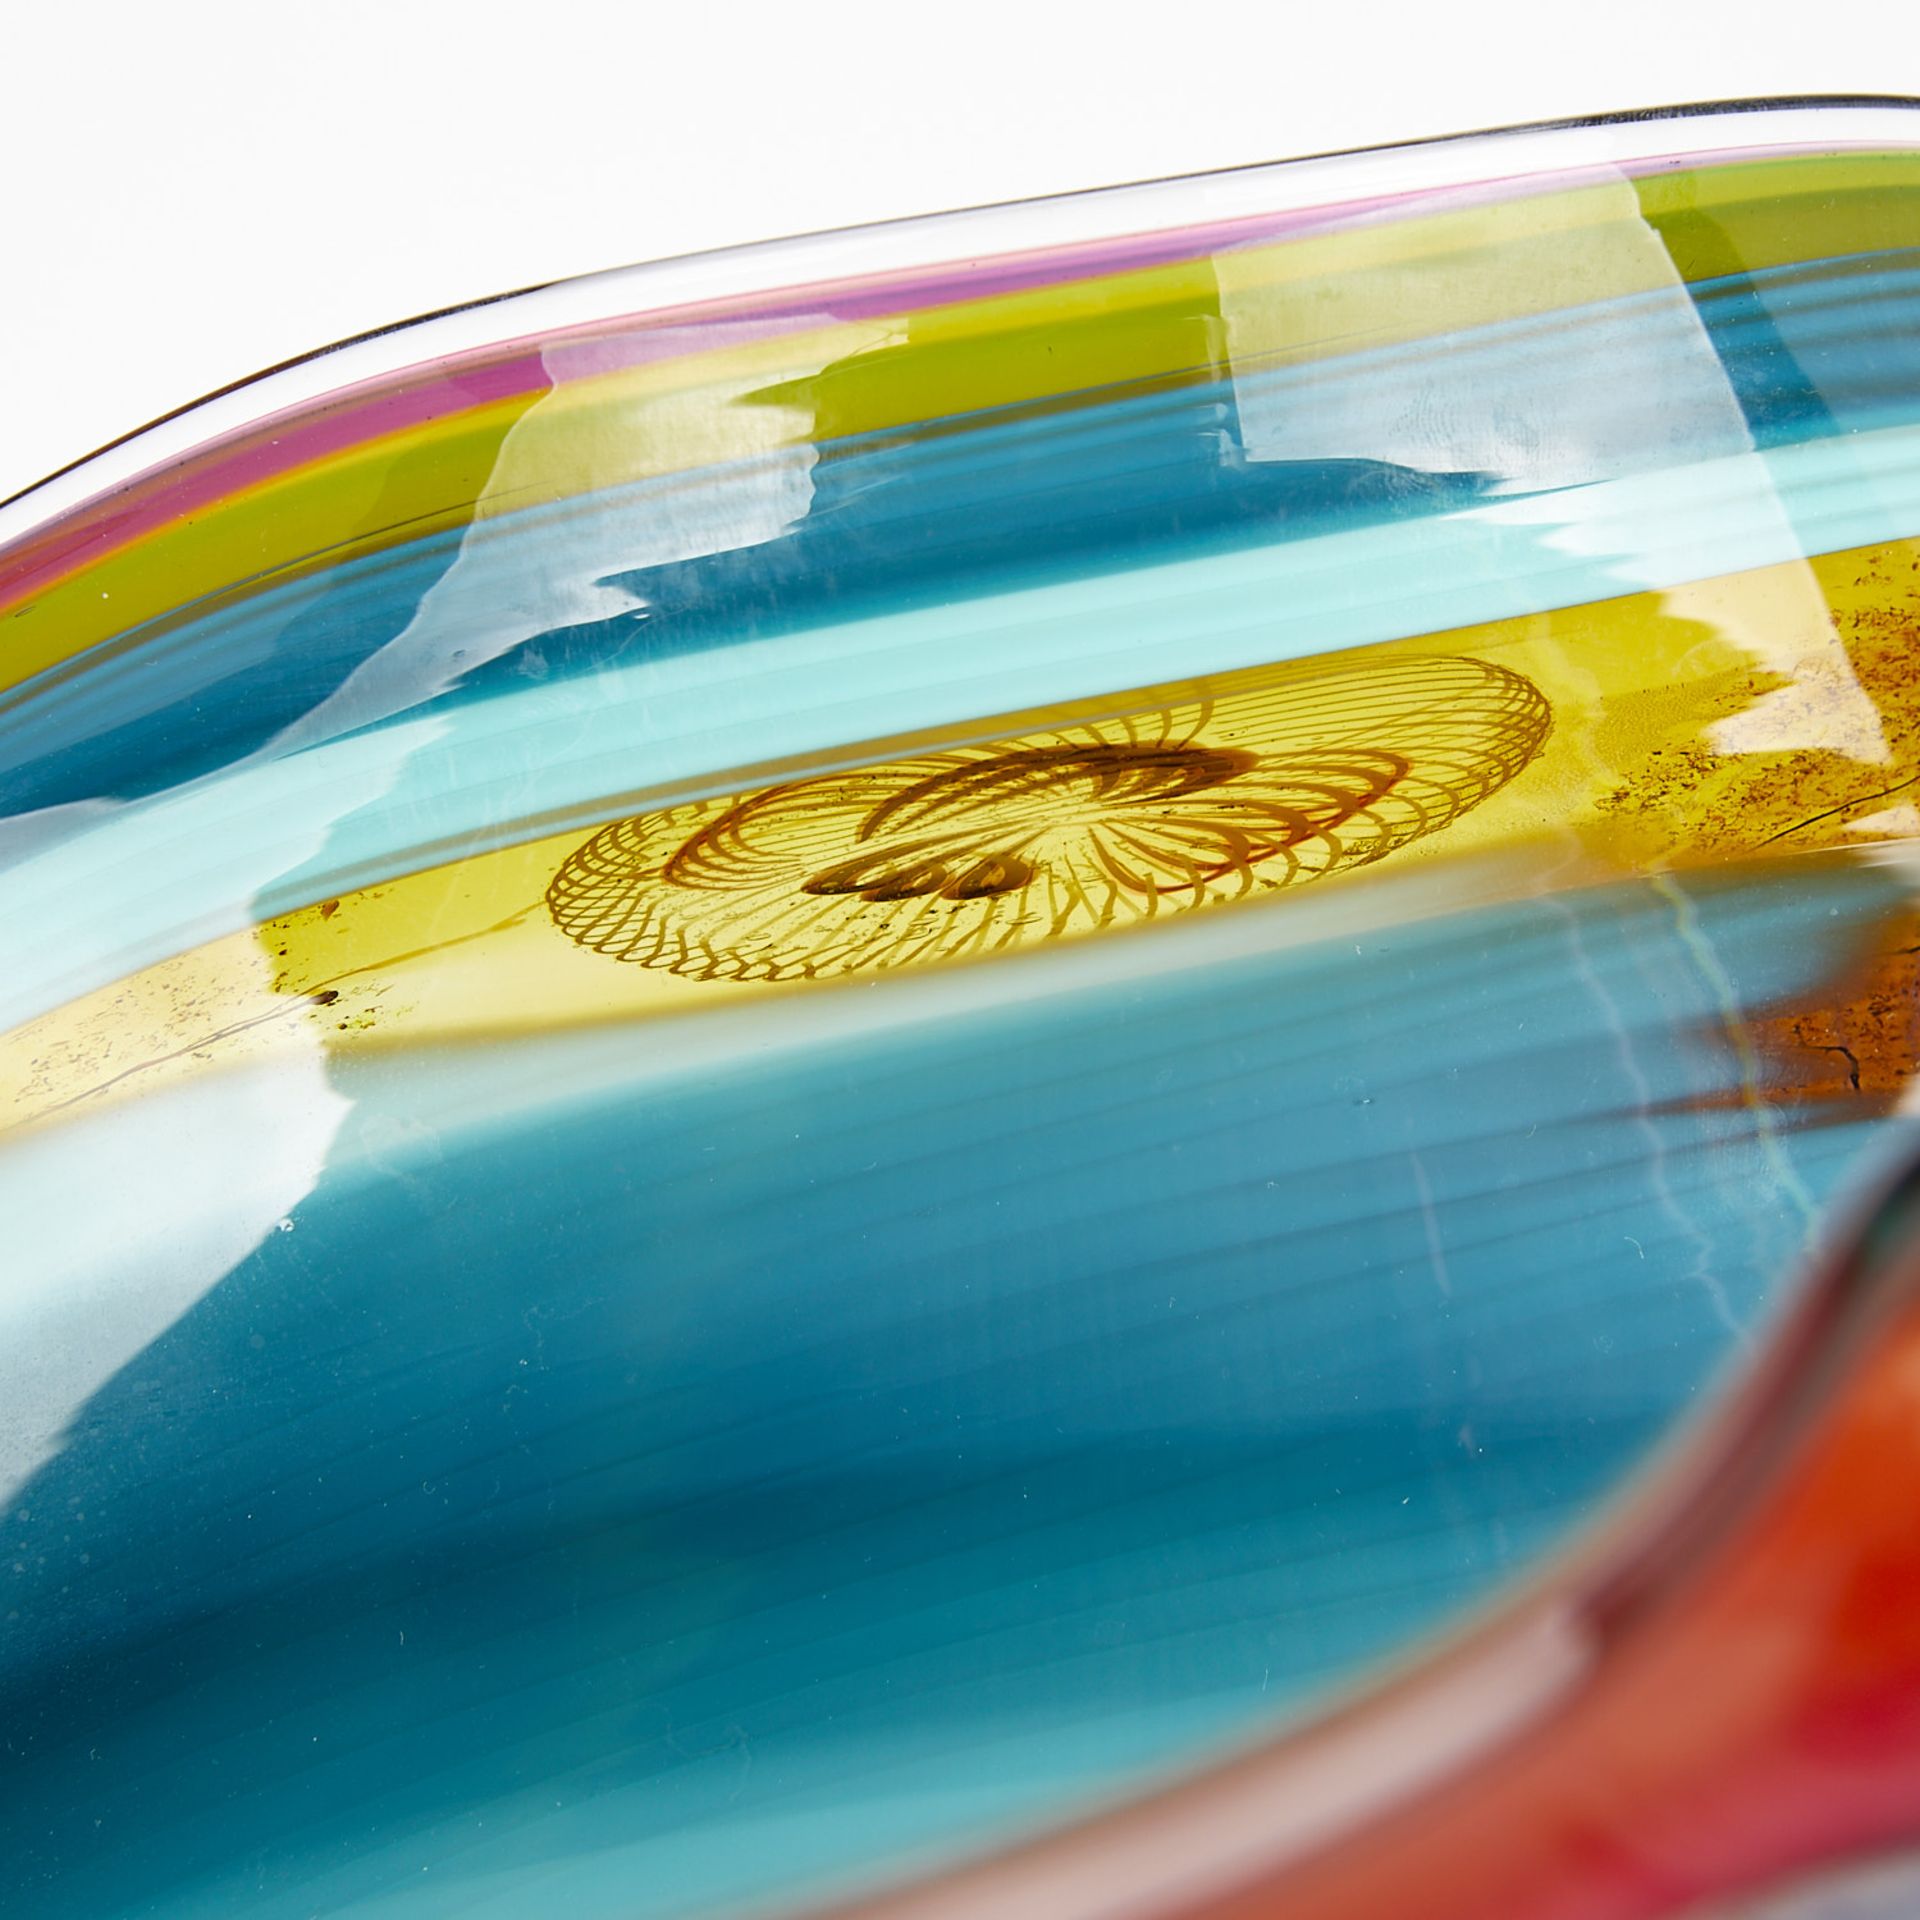 Chris Hawthorne Folded Fan Glass Vessel - Image 16 of 17